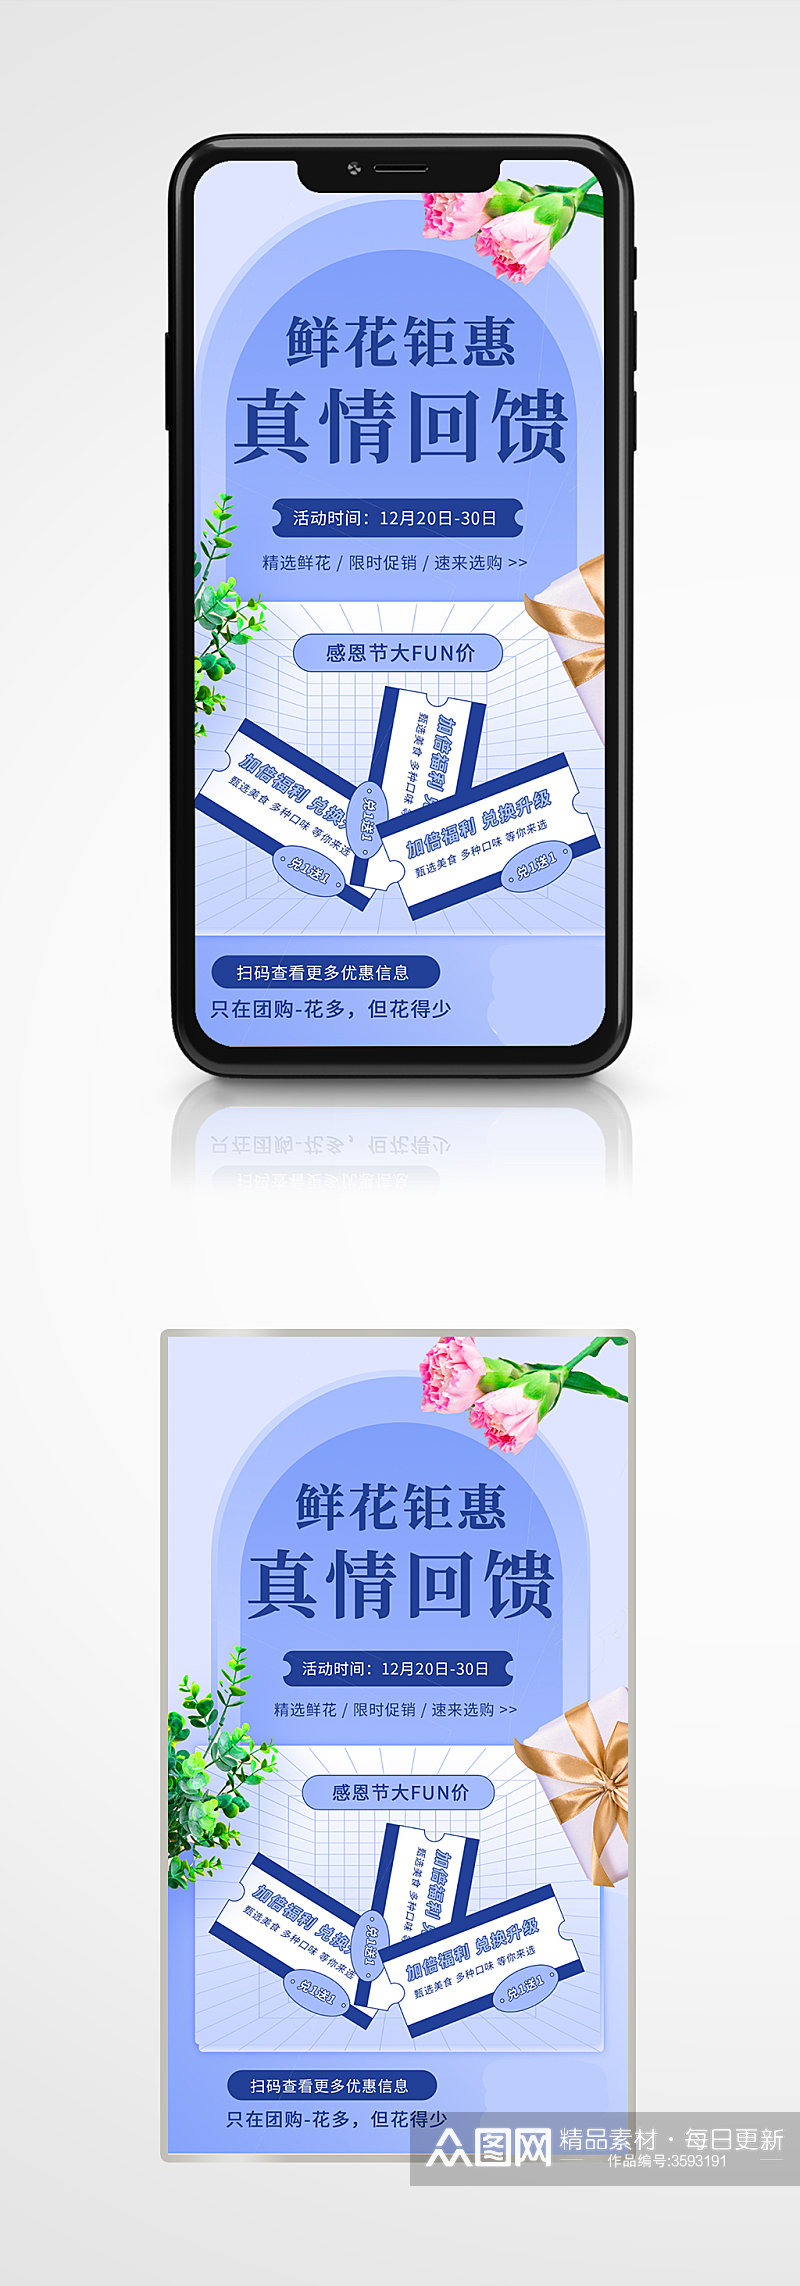 鲜花店浪漫促销手机海报蓝色简约活动素材